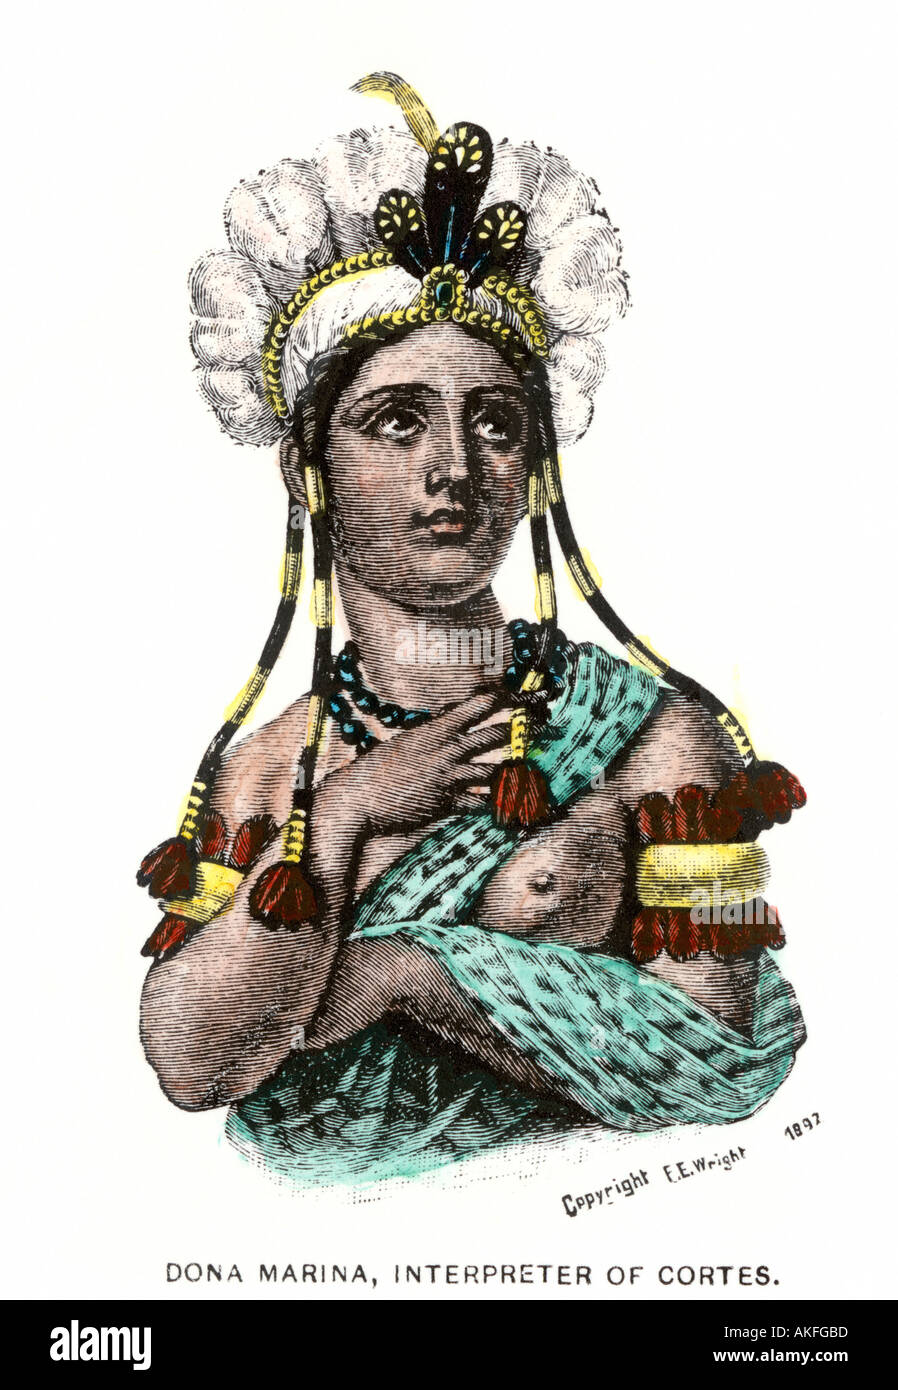 La Malinche Dona Marina nativo interprete messicano per Hernando Cortes nella conquista spagnola del Messico azteco 1500s. Colorate a mano la xilografia Foto Stock